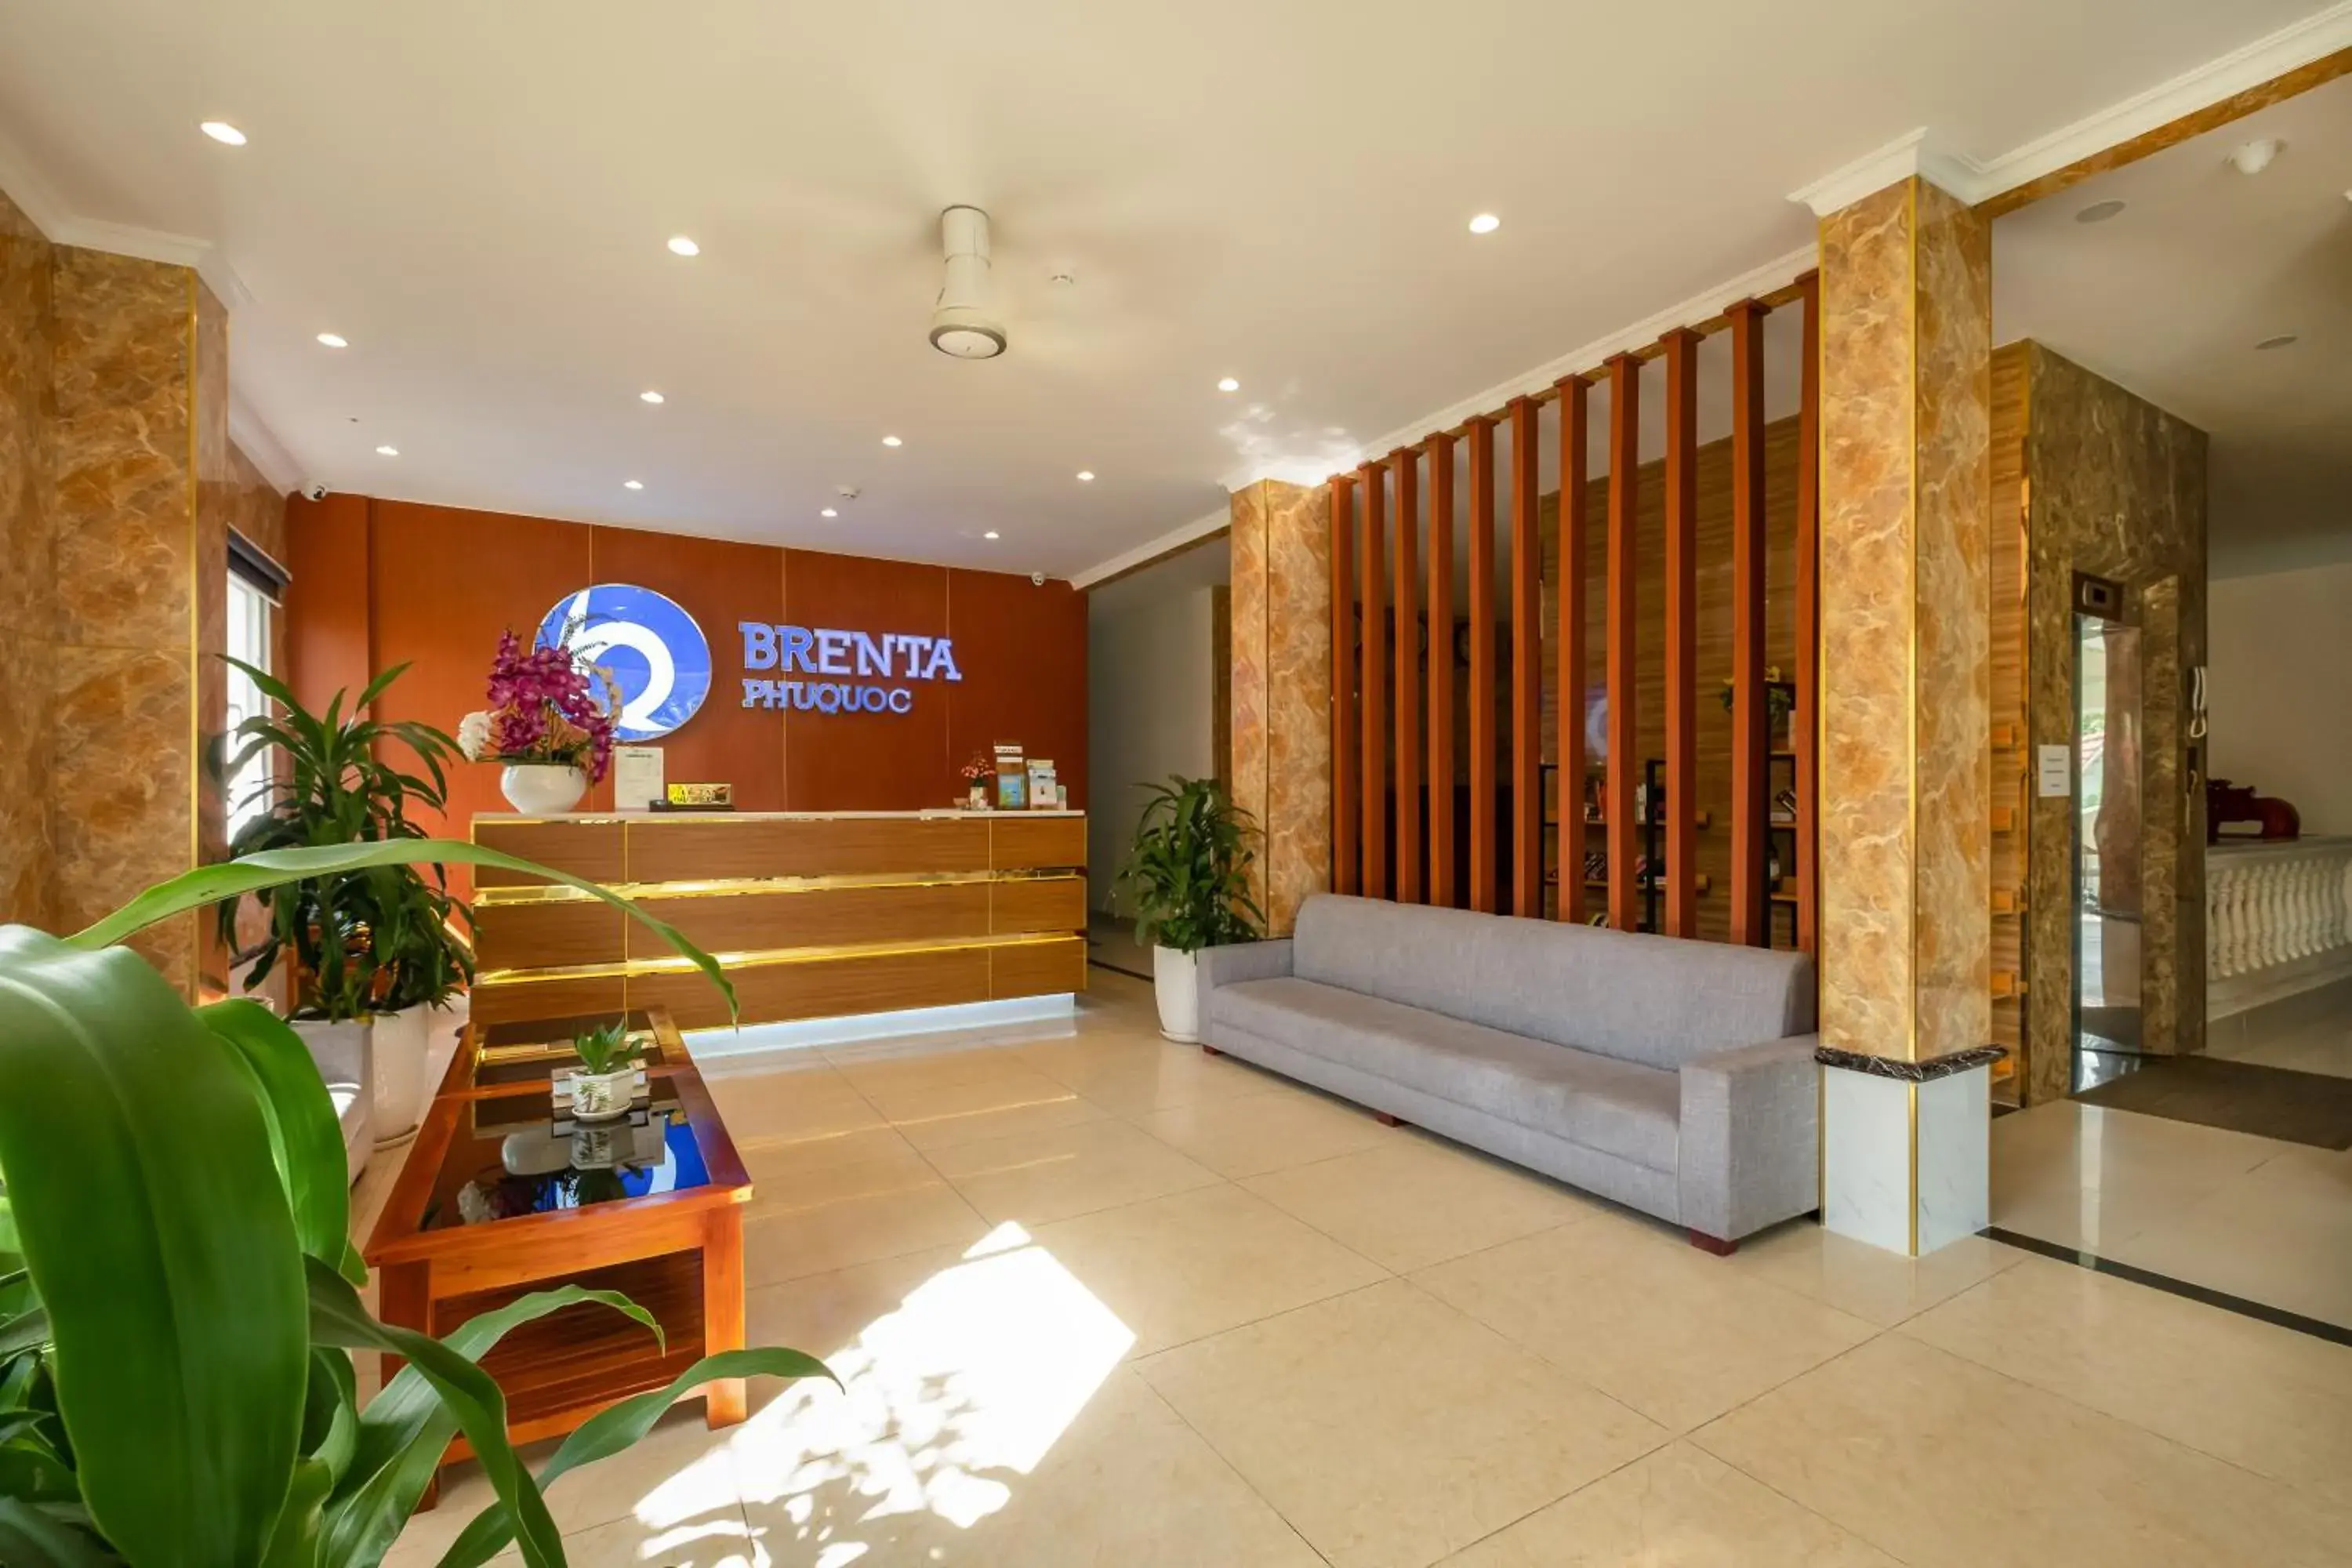 Lobby or reception, Lobby/Reception in Brenta Phu Quoc Hotel